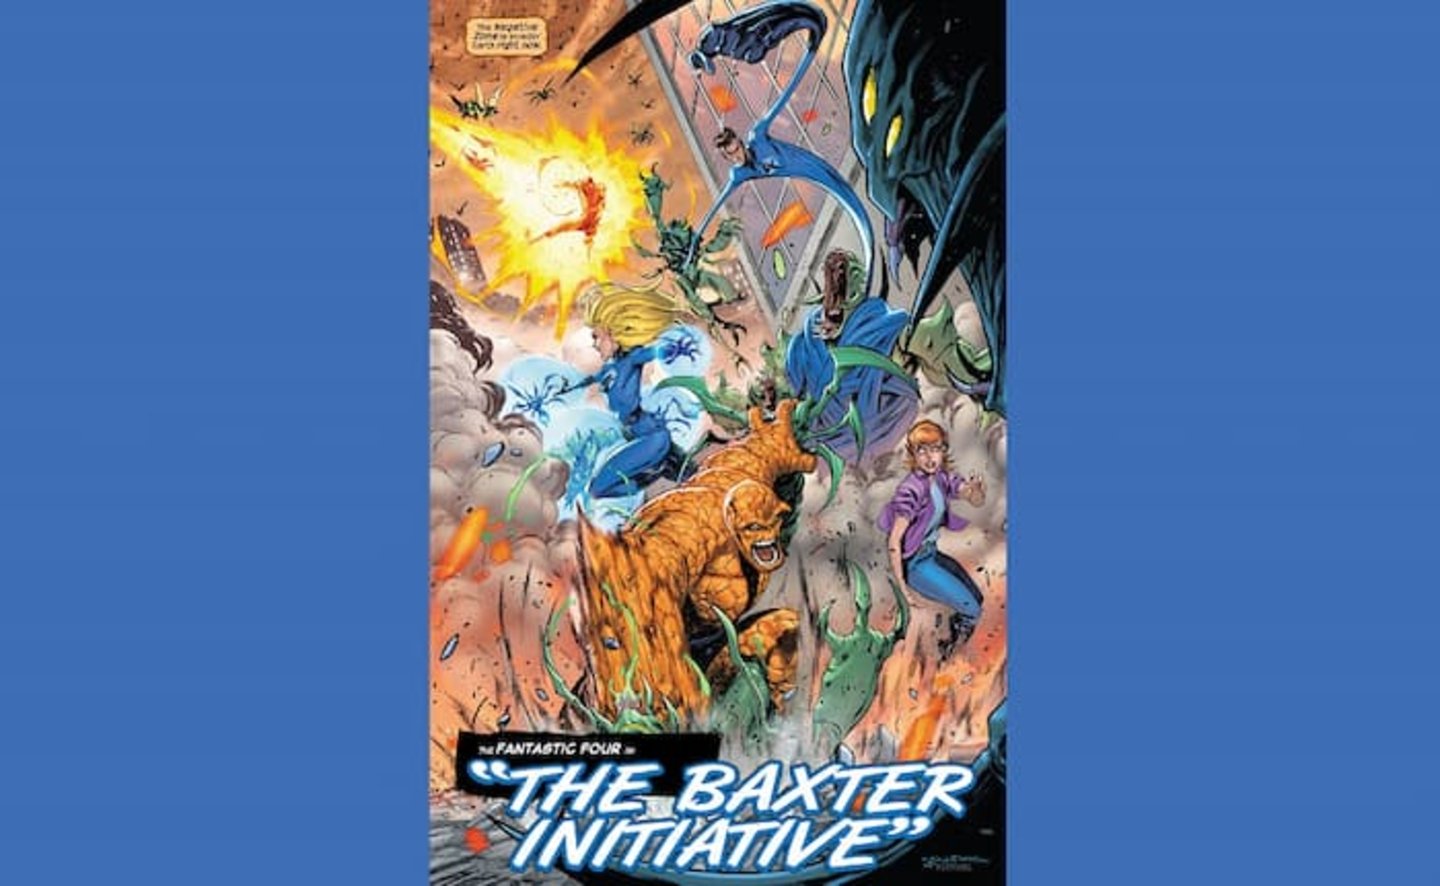 La Zona Negativa invadiendo la ciudad de Nueva York, en el cómic Fantastic Four de Marvel